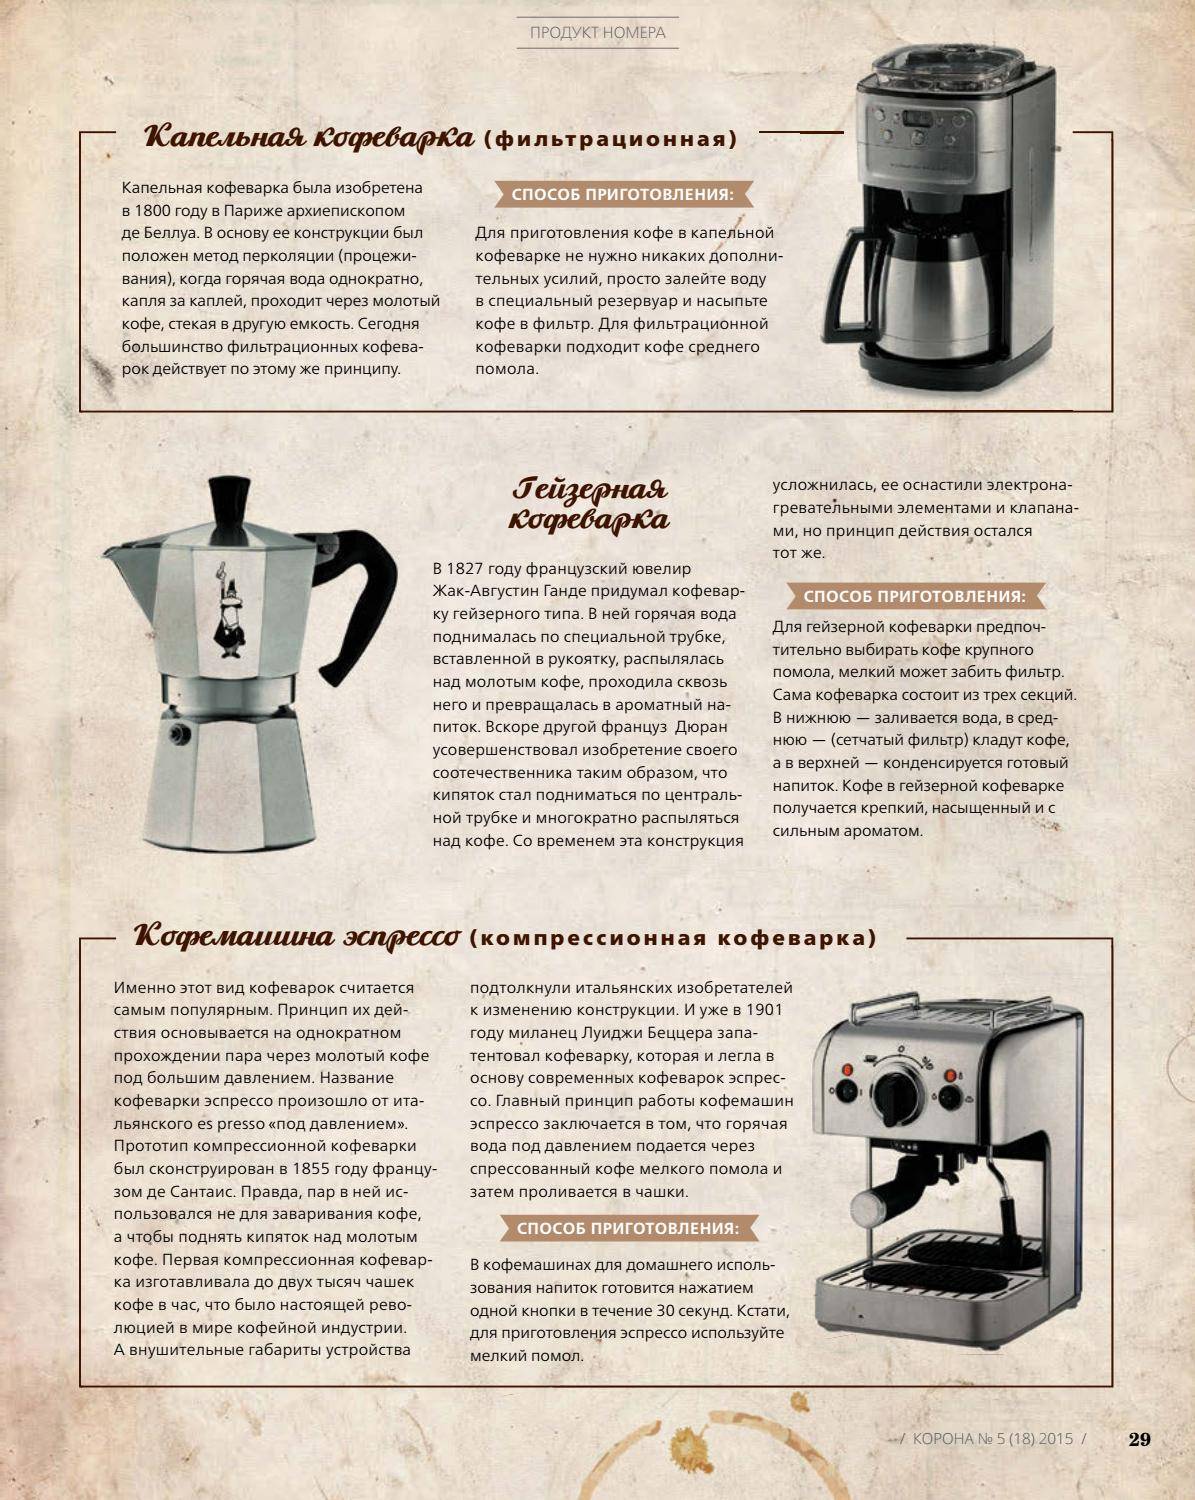 Капсульная или рожковая кофеварка что лучше: особенности выбора кофемашины